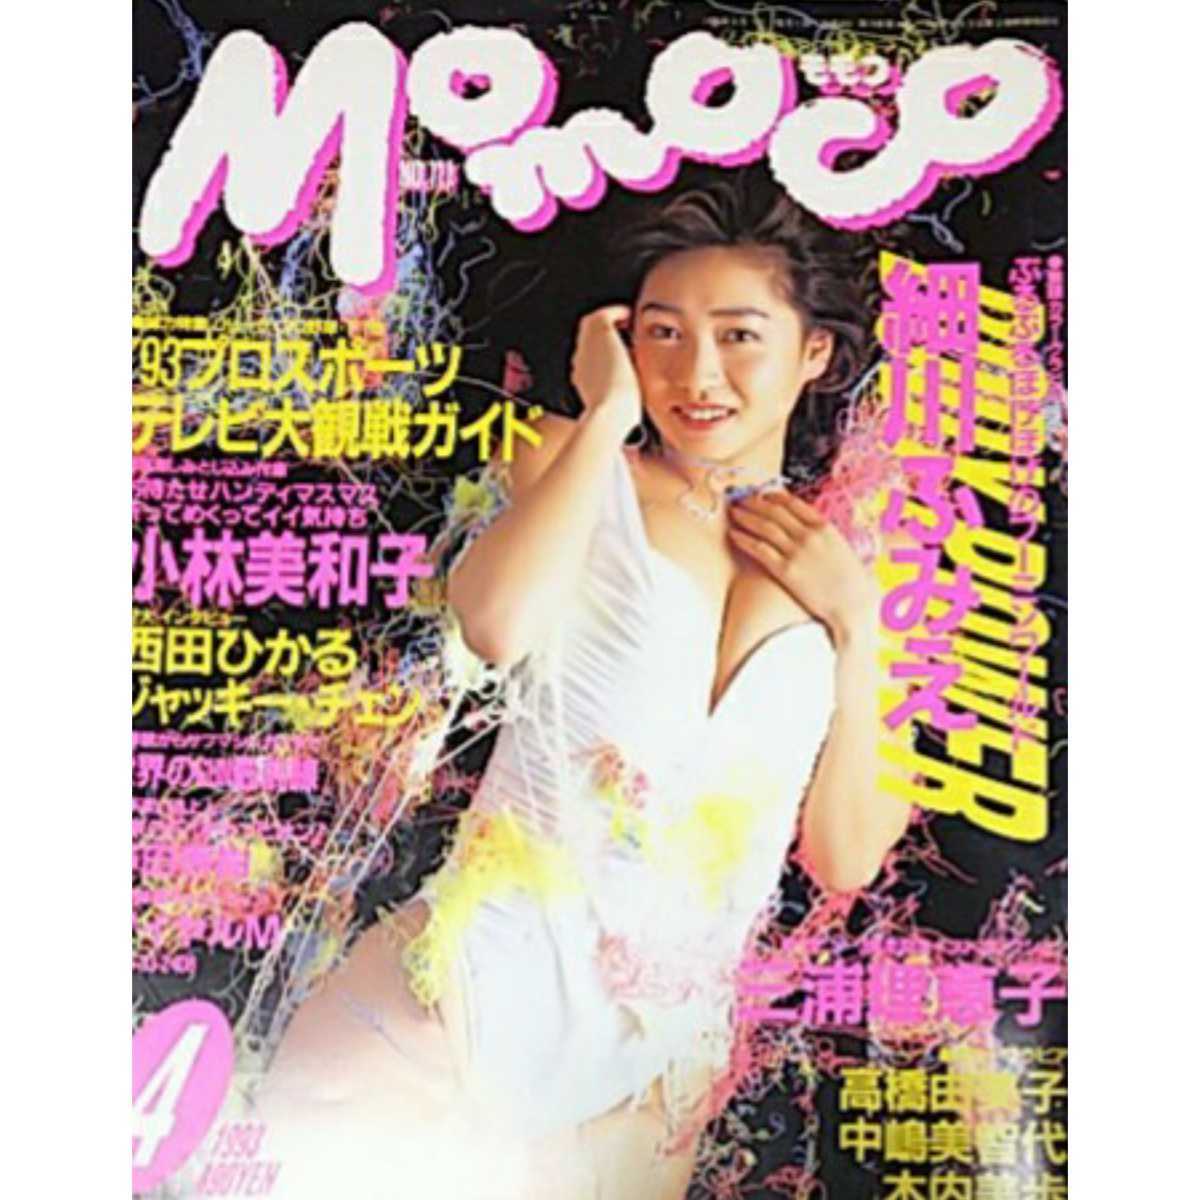 [ magazine ] Momoko /Momoco 1993 year 4 month number Hosokawa Fumie Miura Rieko Takahashi Yumiko Nakajima Michiyo tree inside beautiful . other 